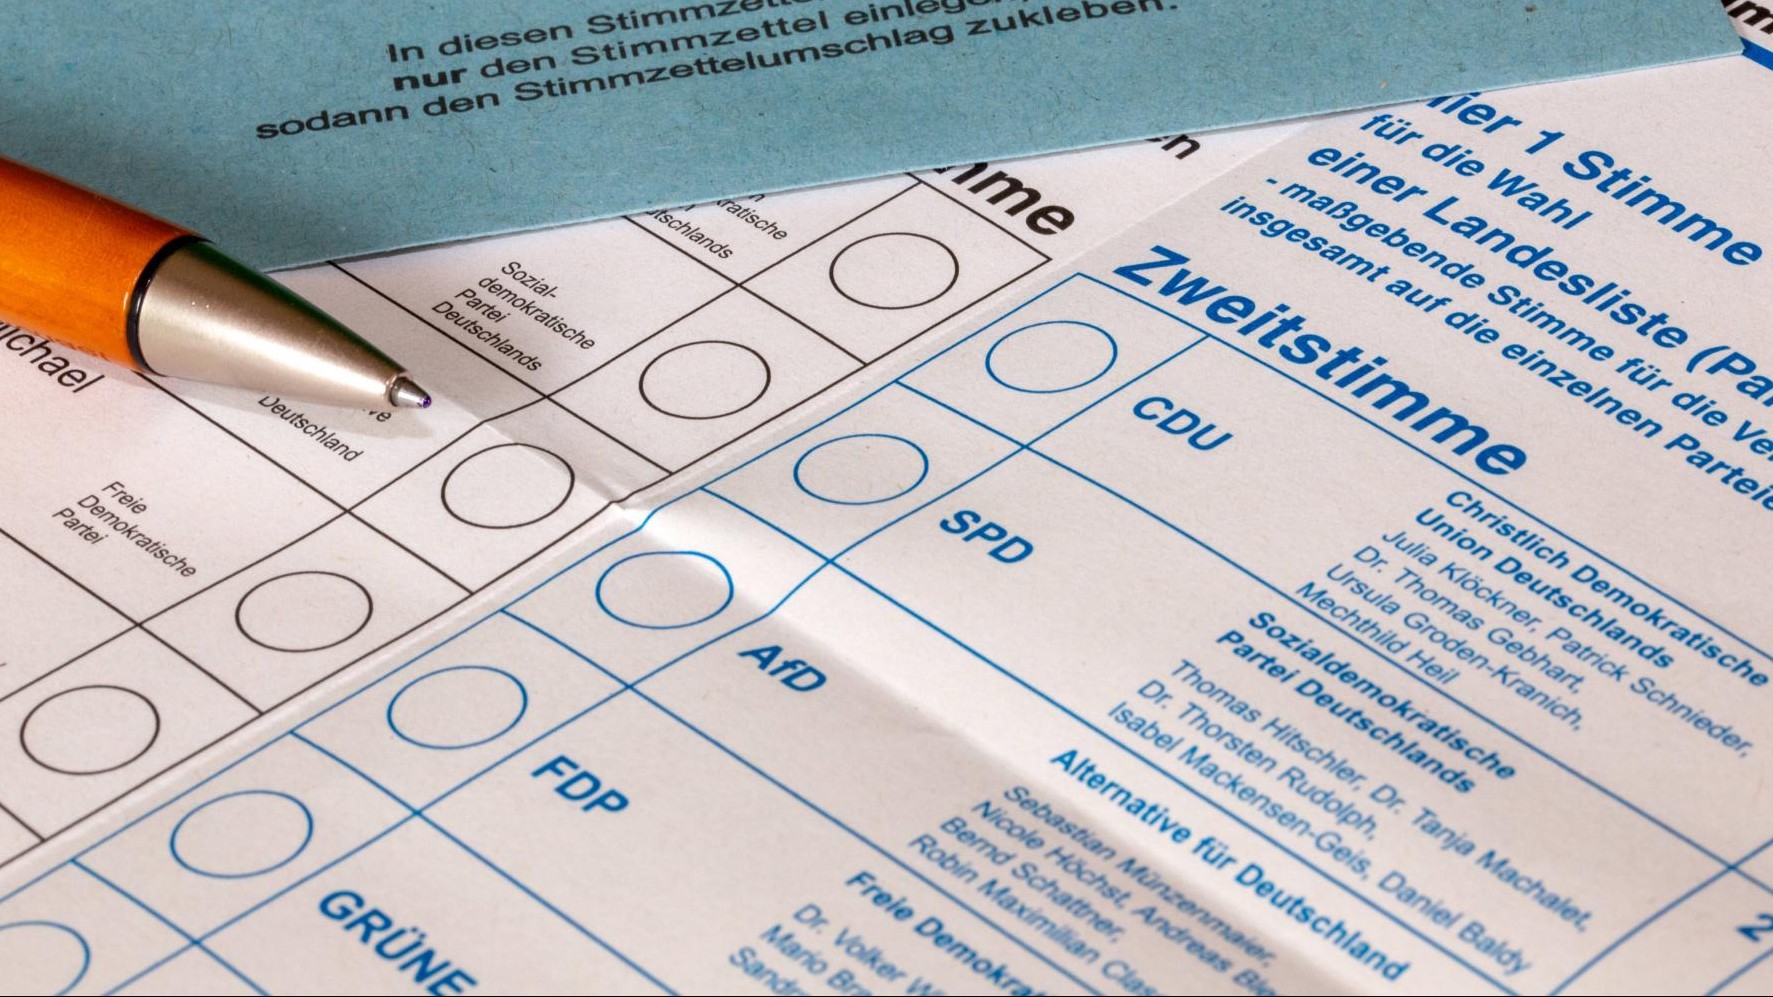 Abstimmung für die AfD bei der Bundestagswahl 2021: Zettel mit